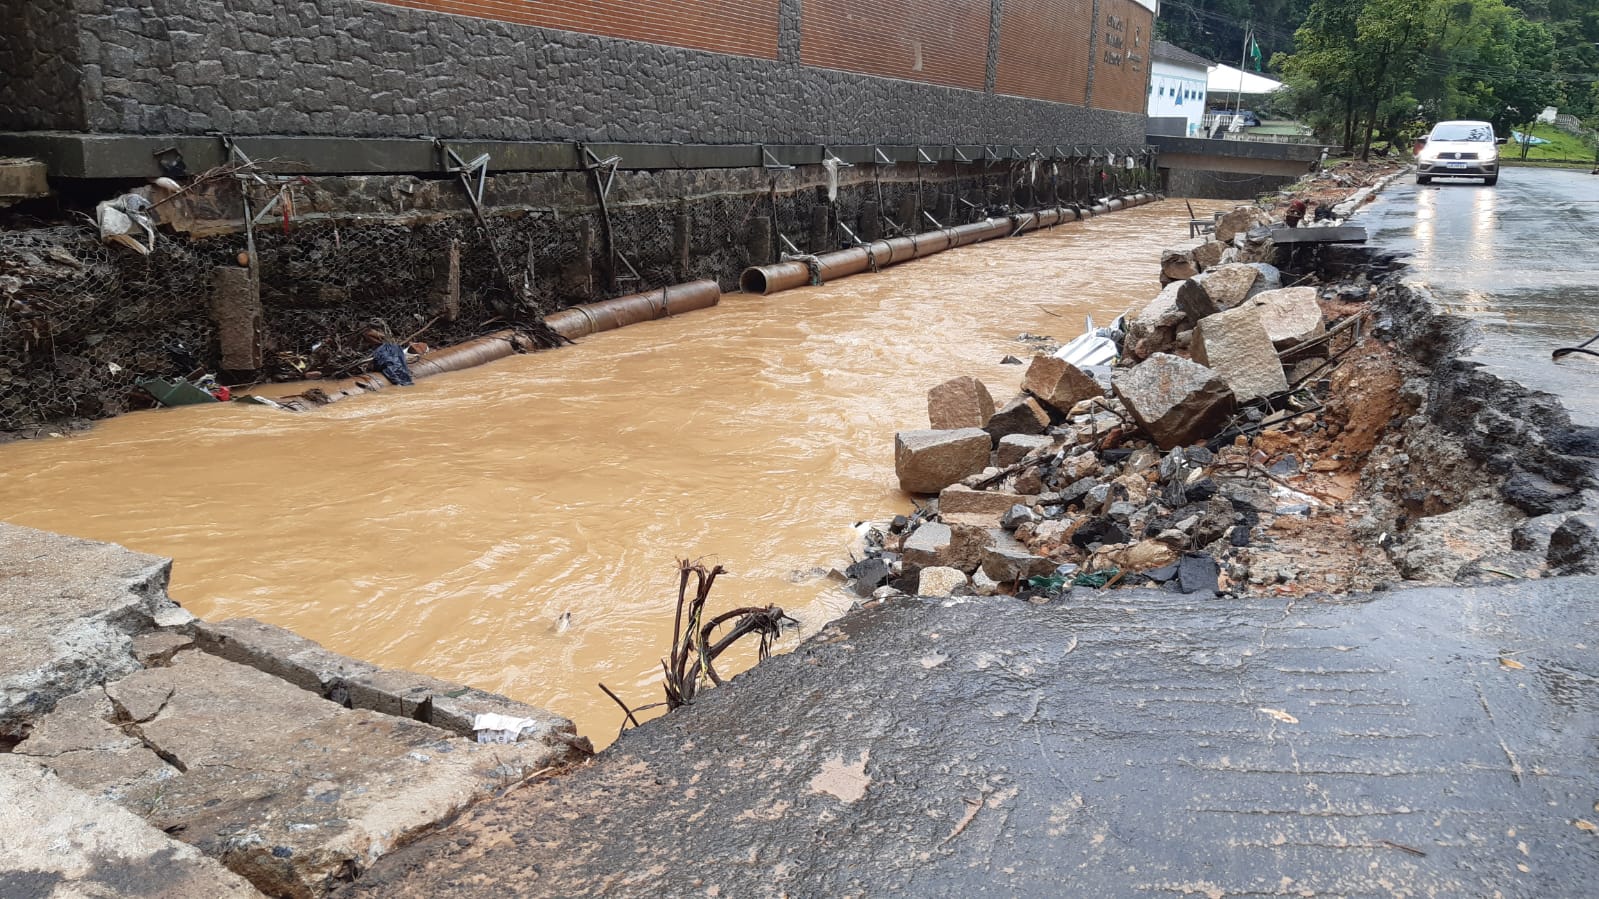 Chuva faz estragos em Petrópolis